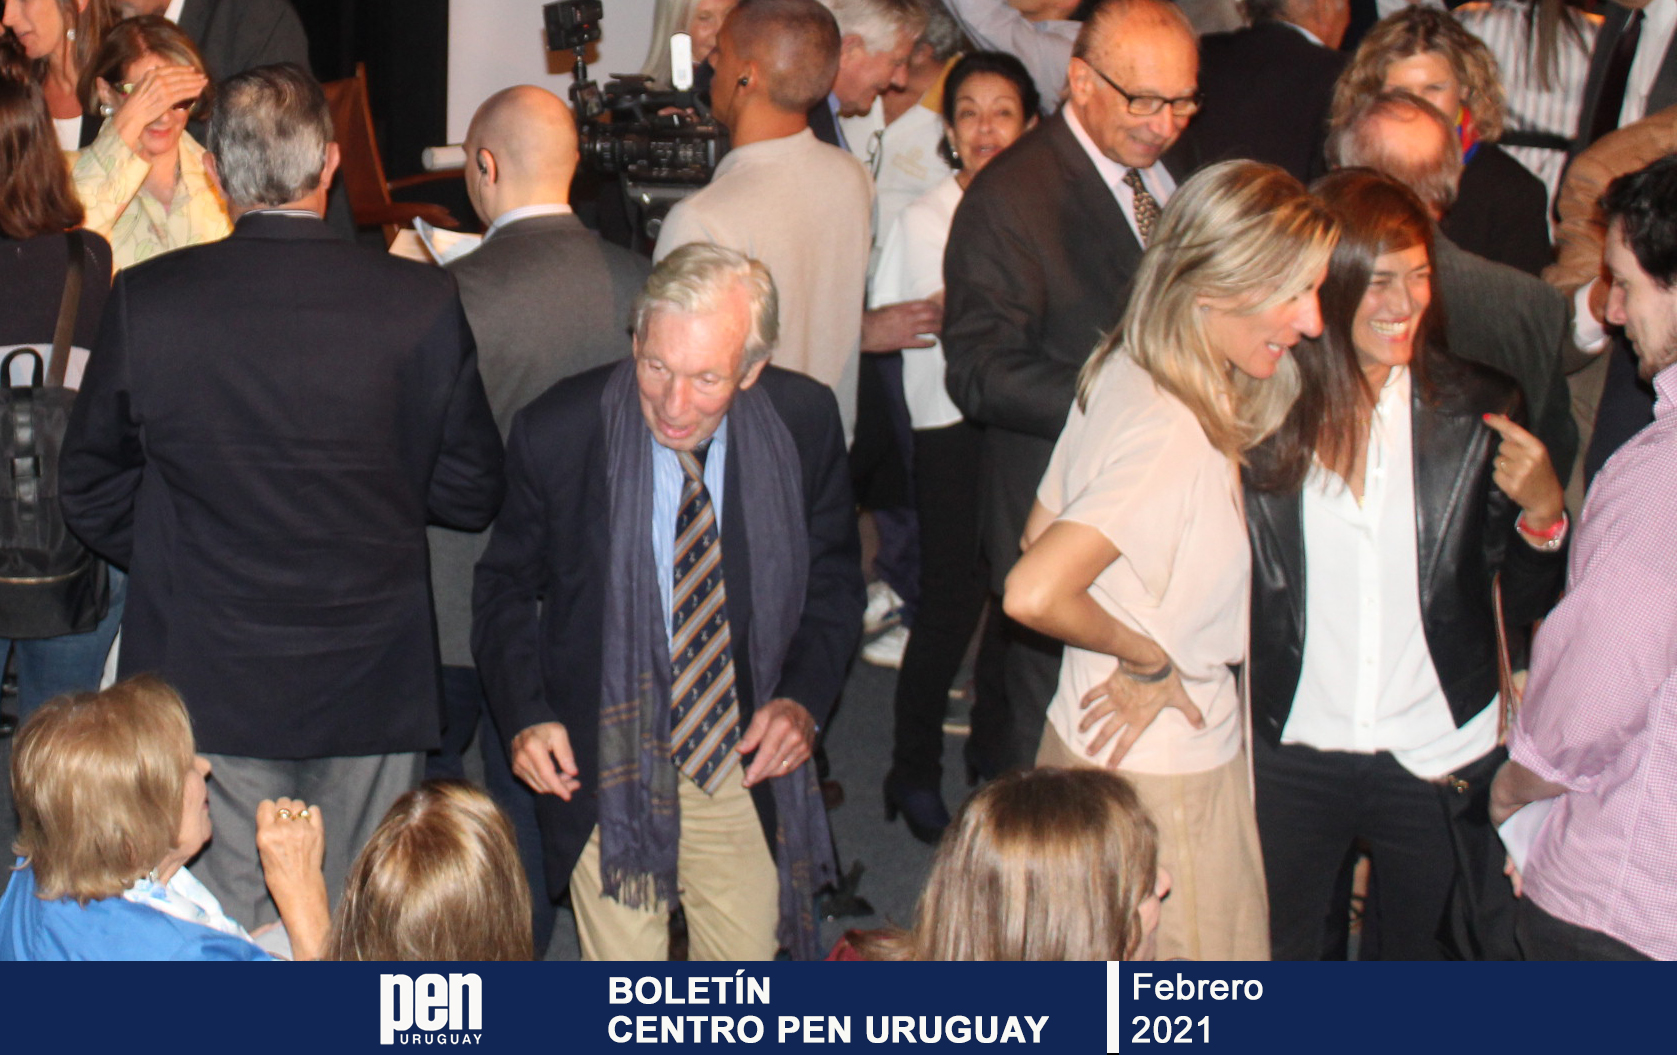 Edición N.1, Boletín Centro Pen Uruguay, febrero 2021